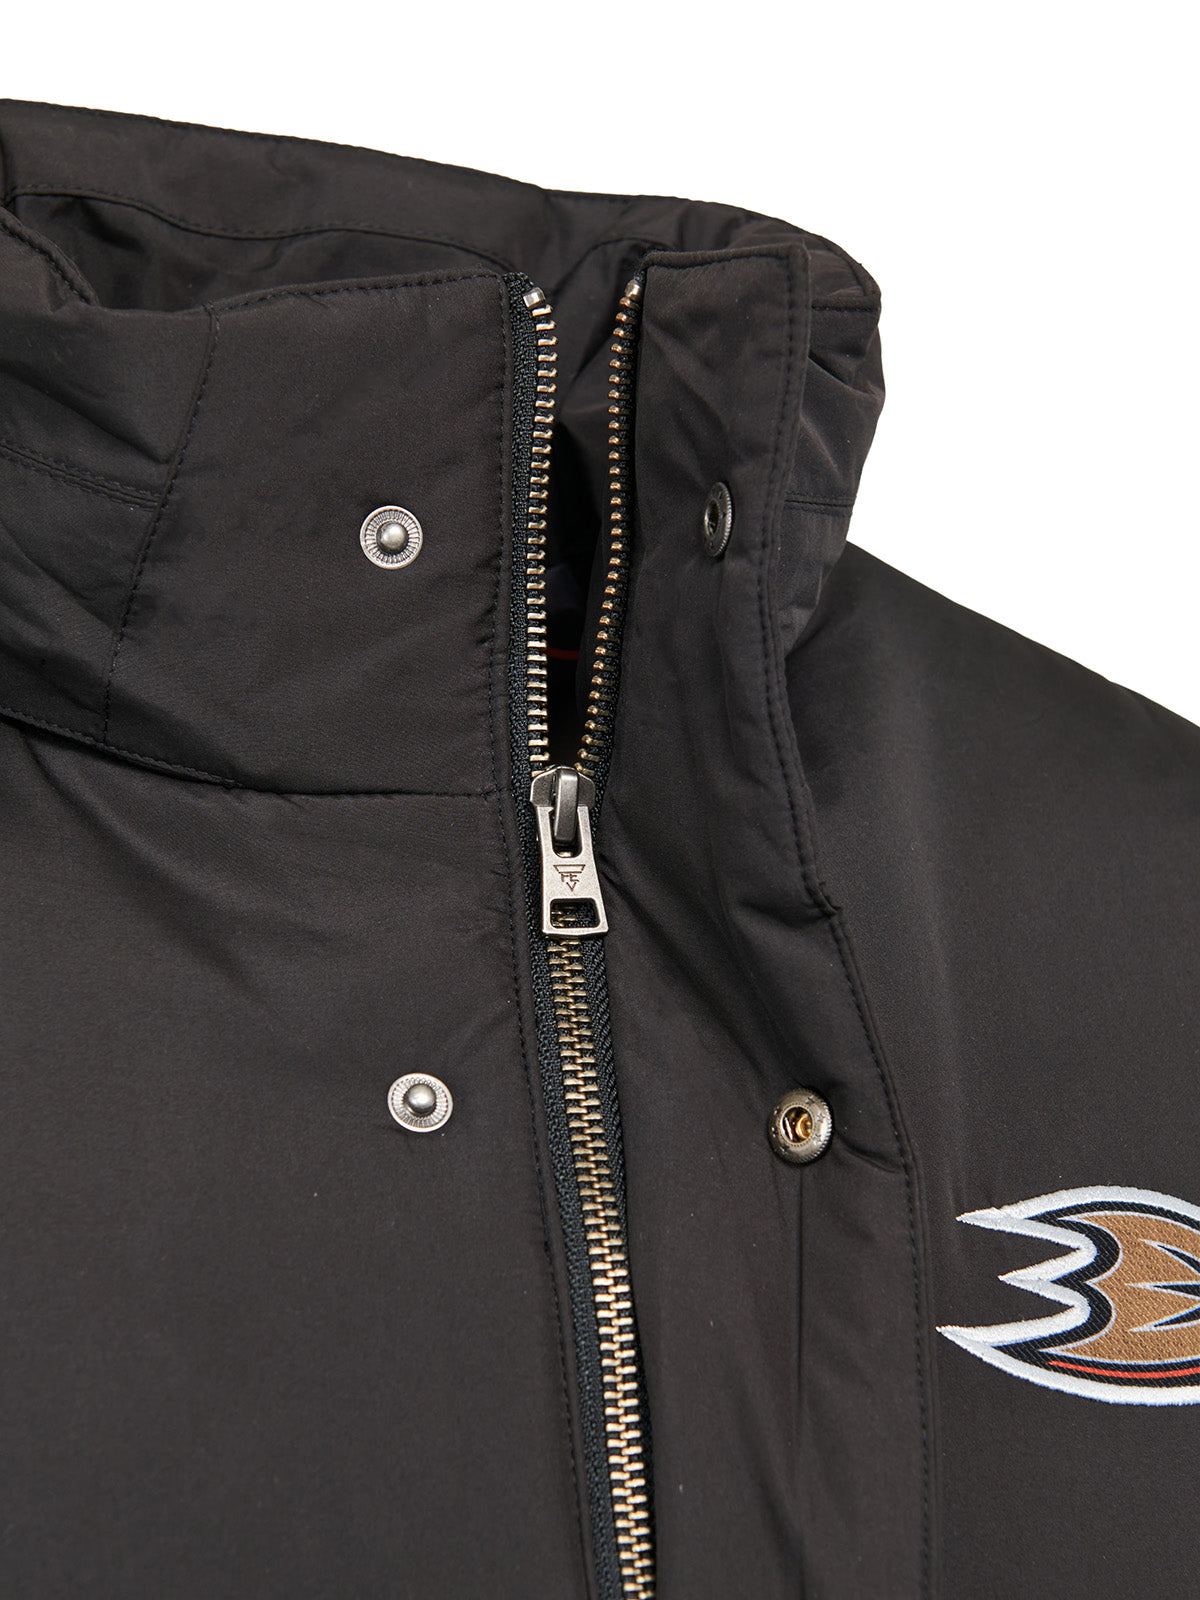 Anaheim Ducks Coach's Jacket